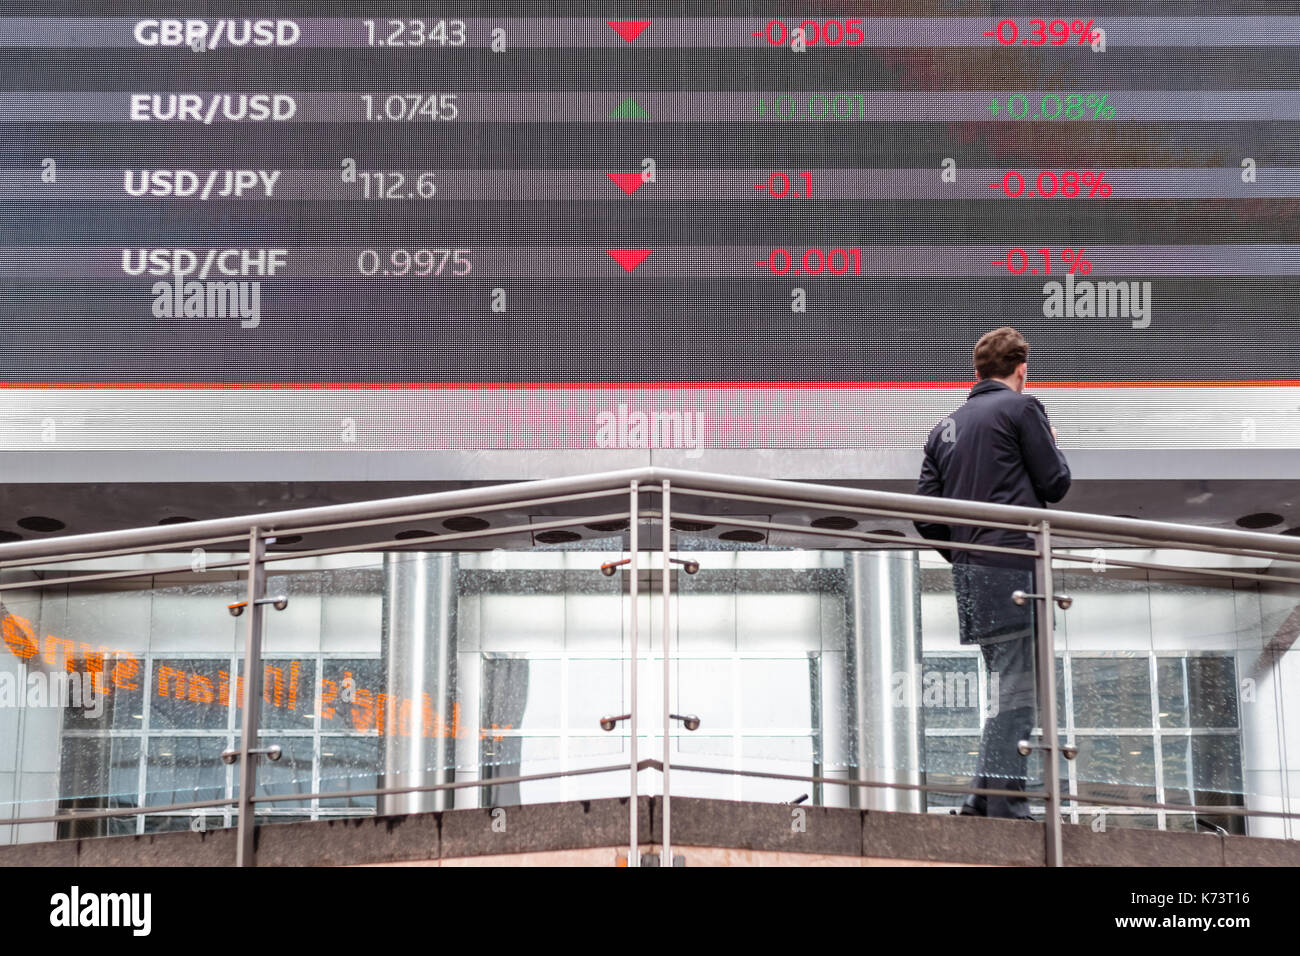 London, Regno Unito - 15 settembre 2017 - Mercato azionario i dati visualizzati su uno schermo esterno in canary wharf con un uomo in piedi di fronte ad essa Foto Stock